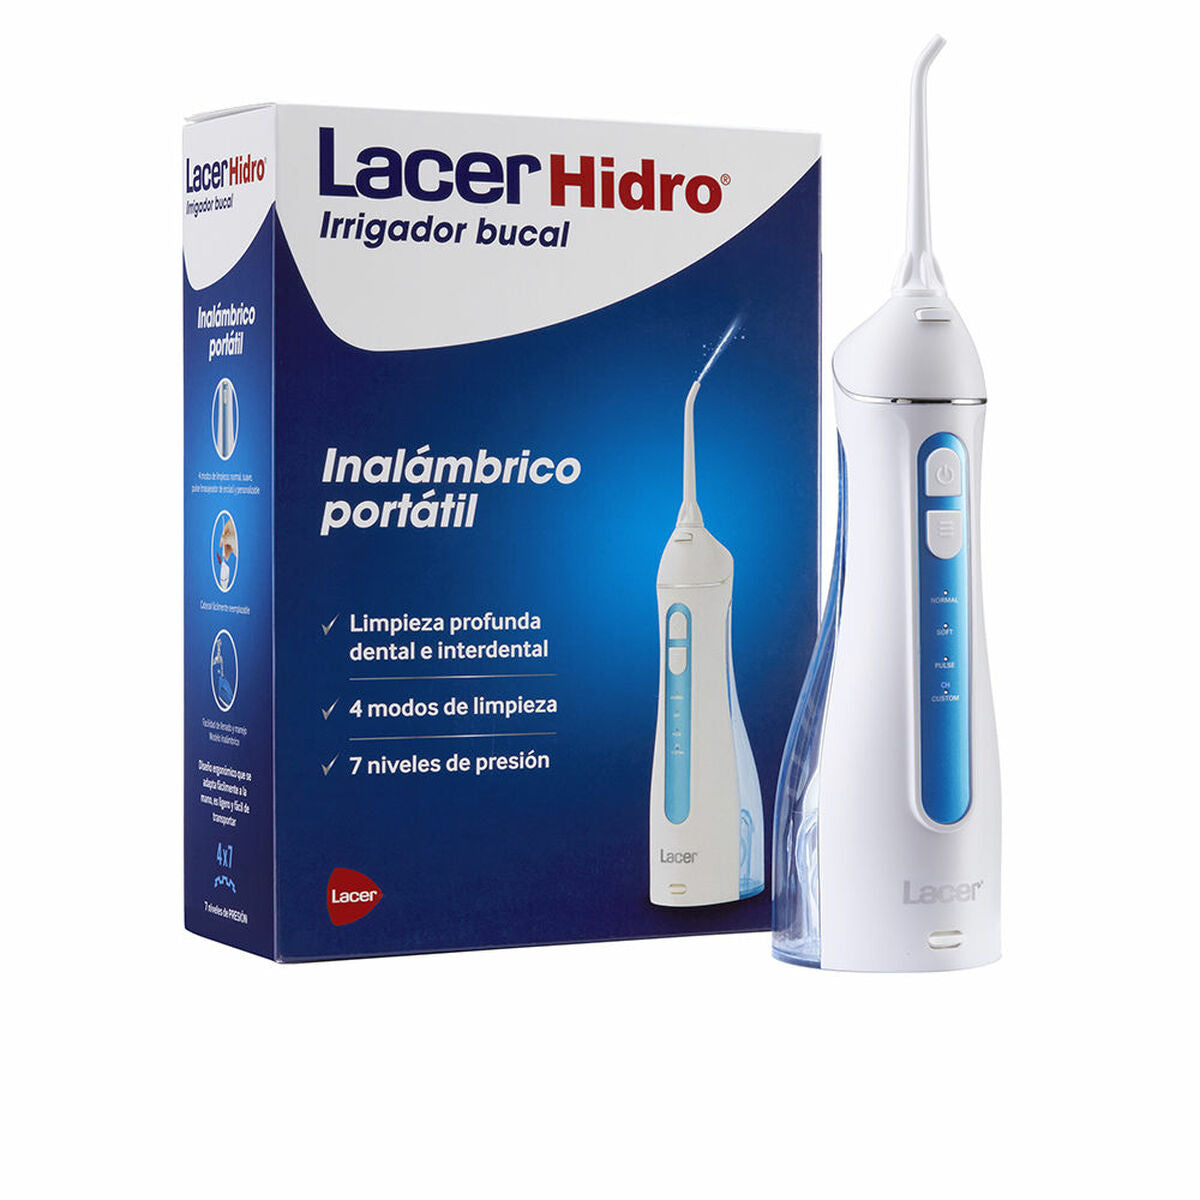 Irrigateur oral lacer Hidro portable